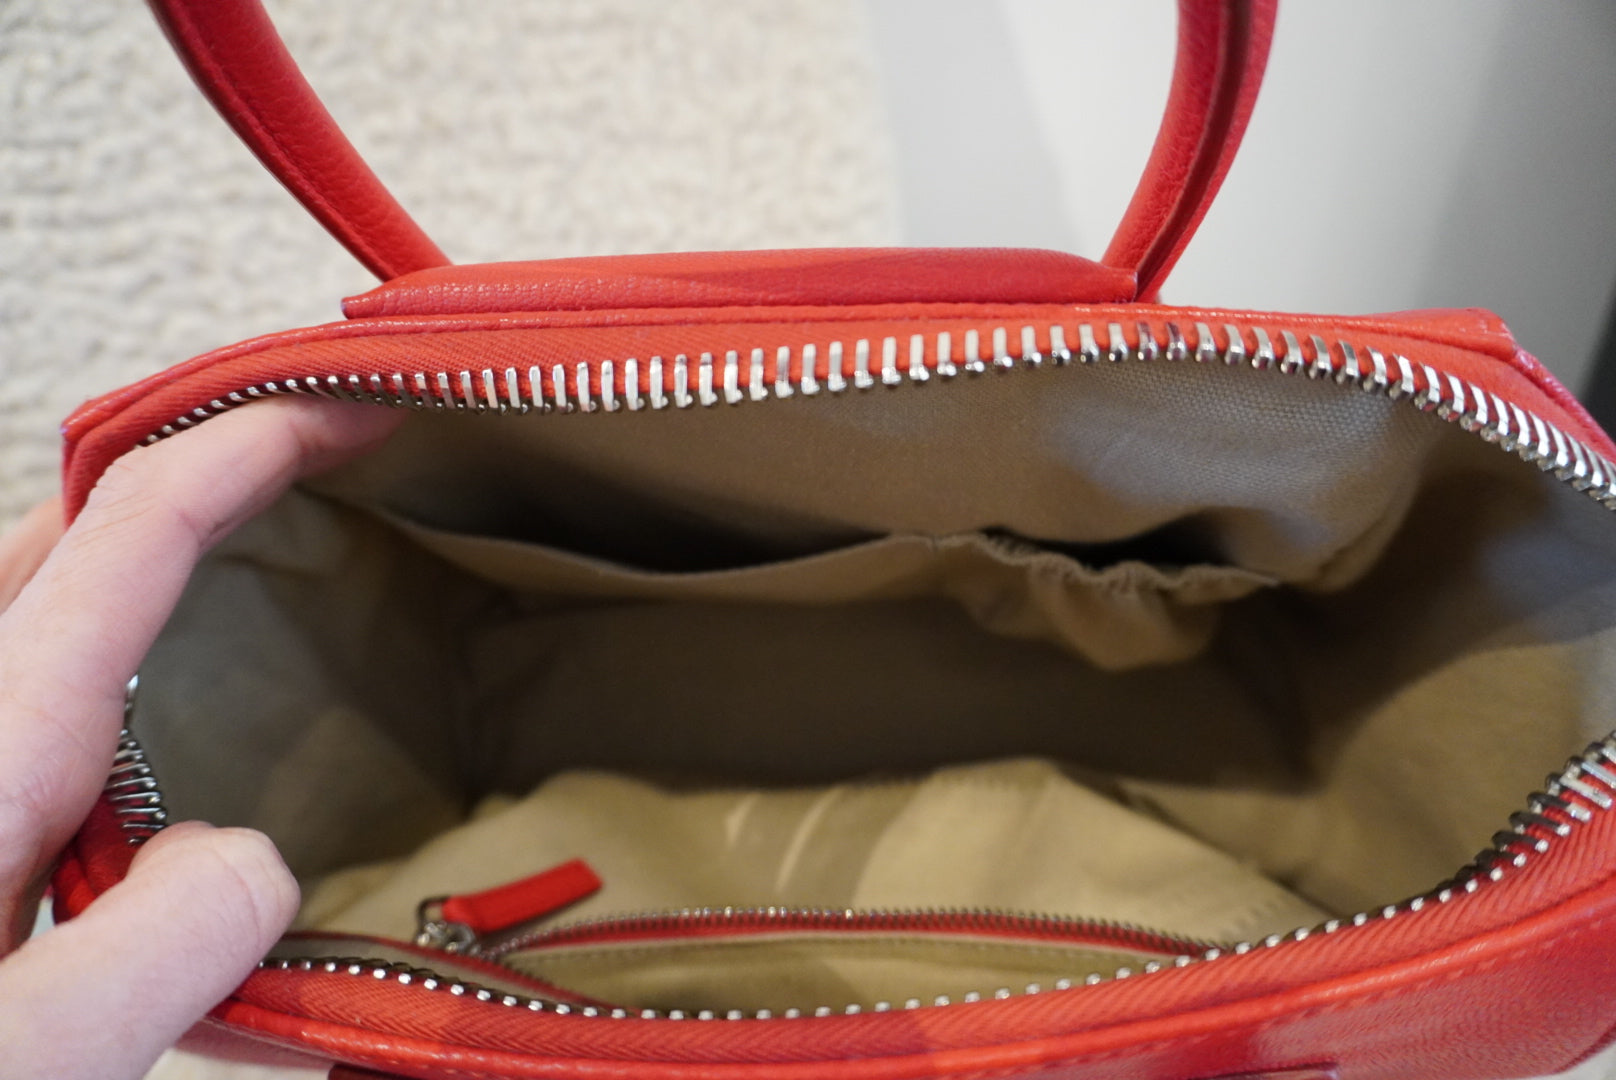 Red Givenchy Antigonia Handbags, Small